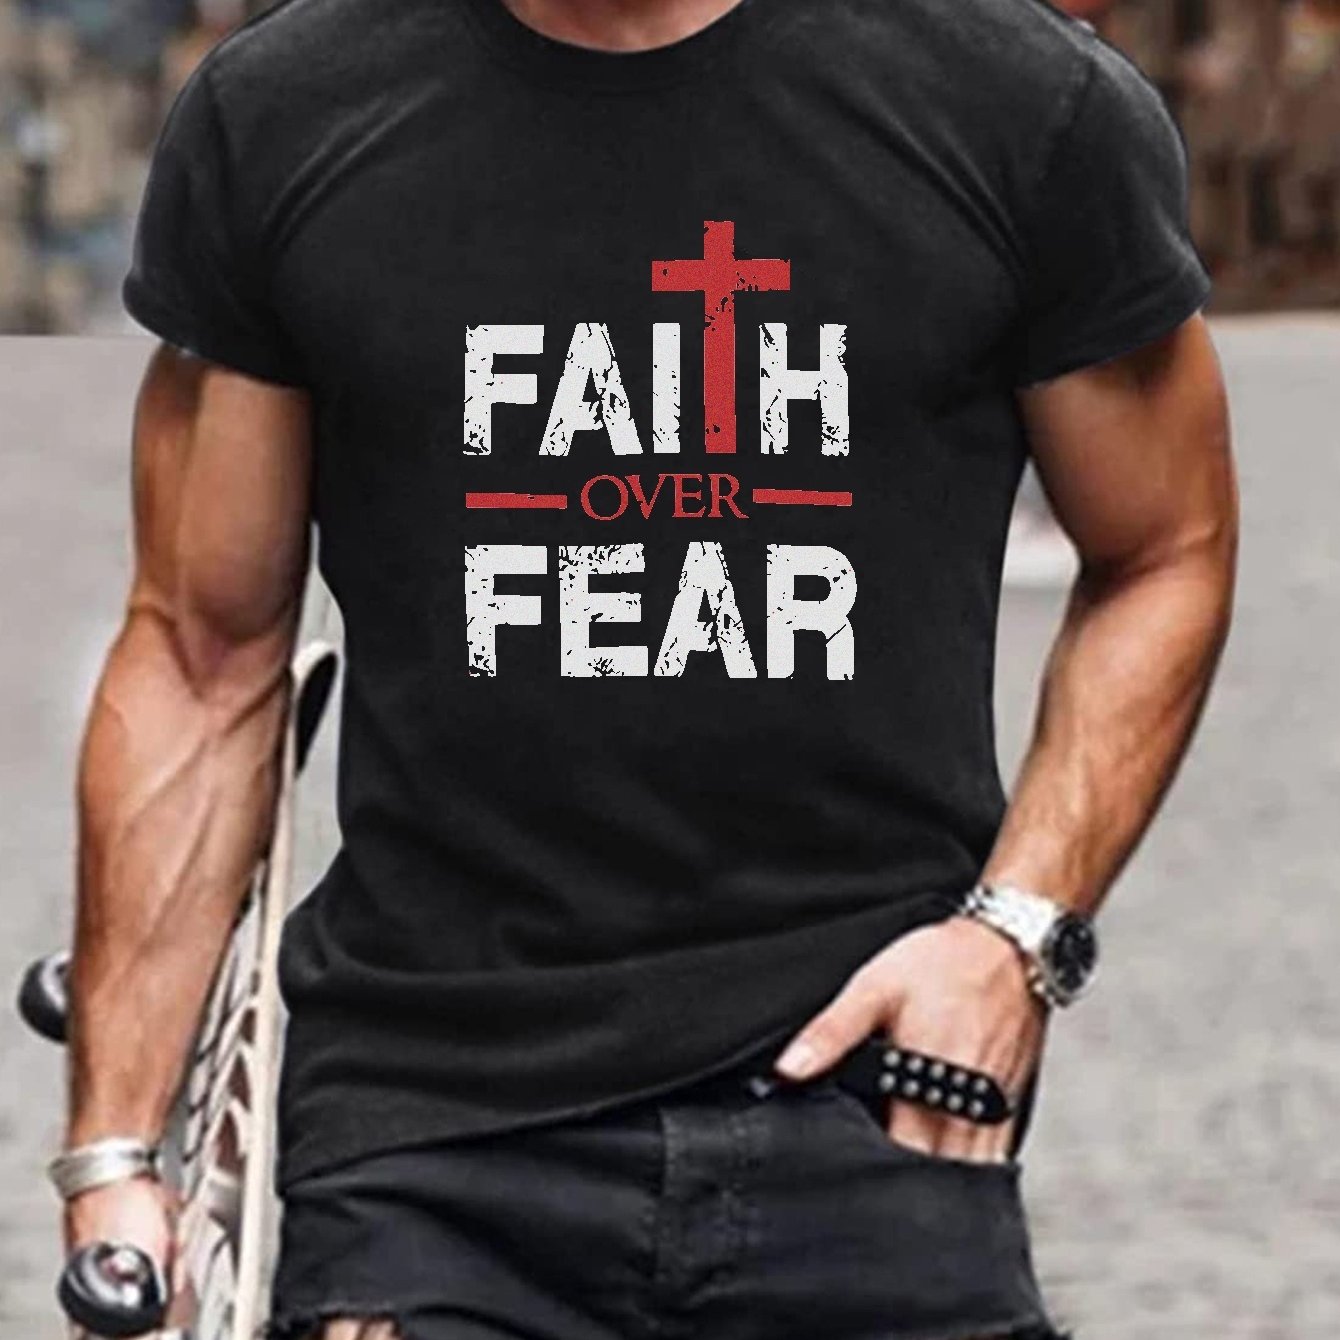 Faith Over Fear Plus Size Men's Christian T-Shirt claimedbygoddesigns